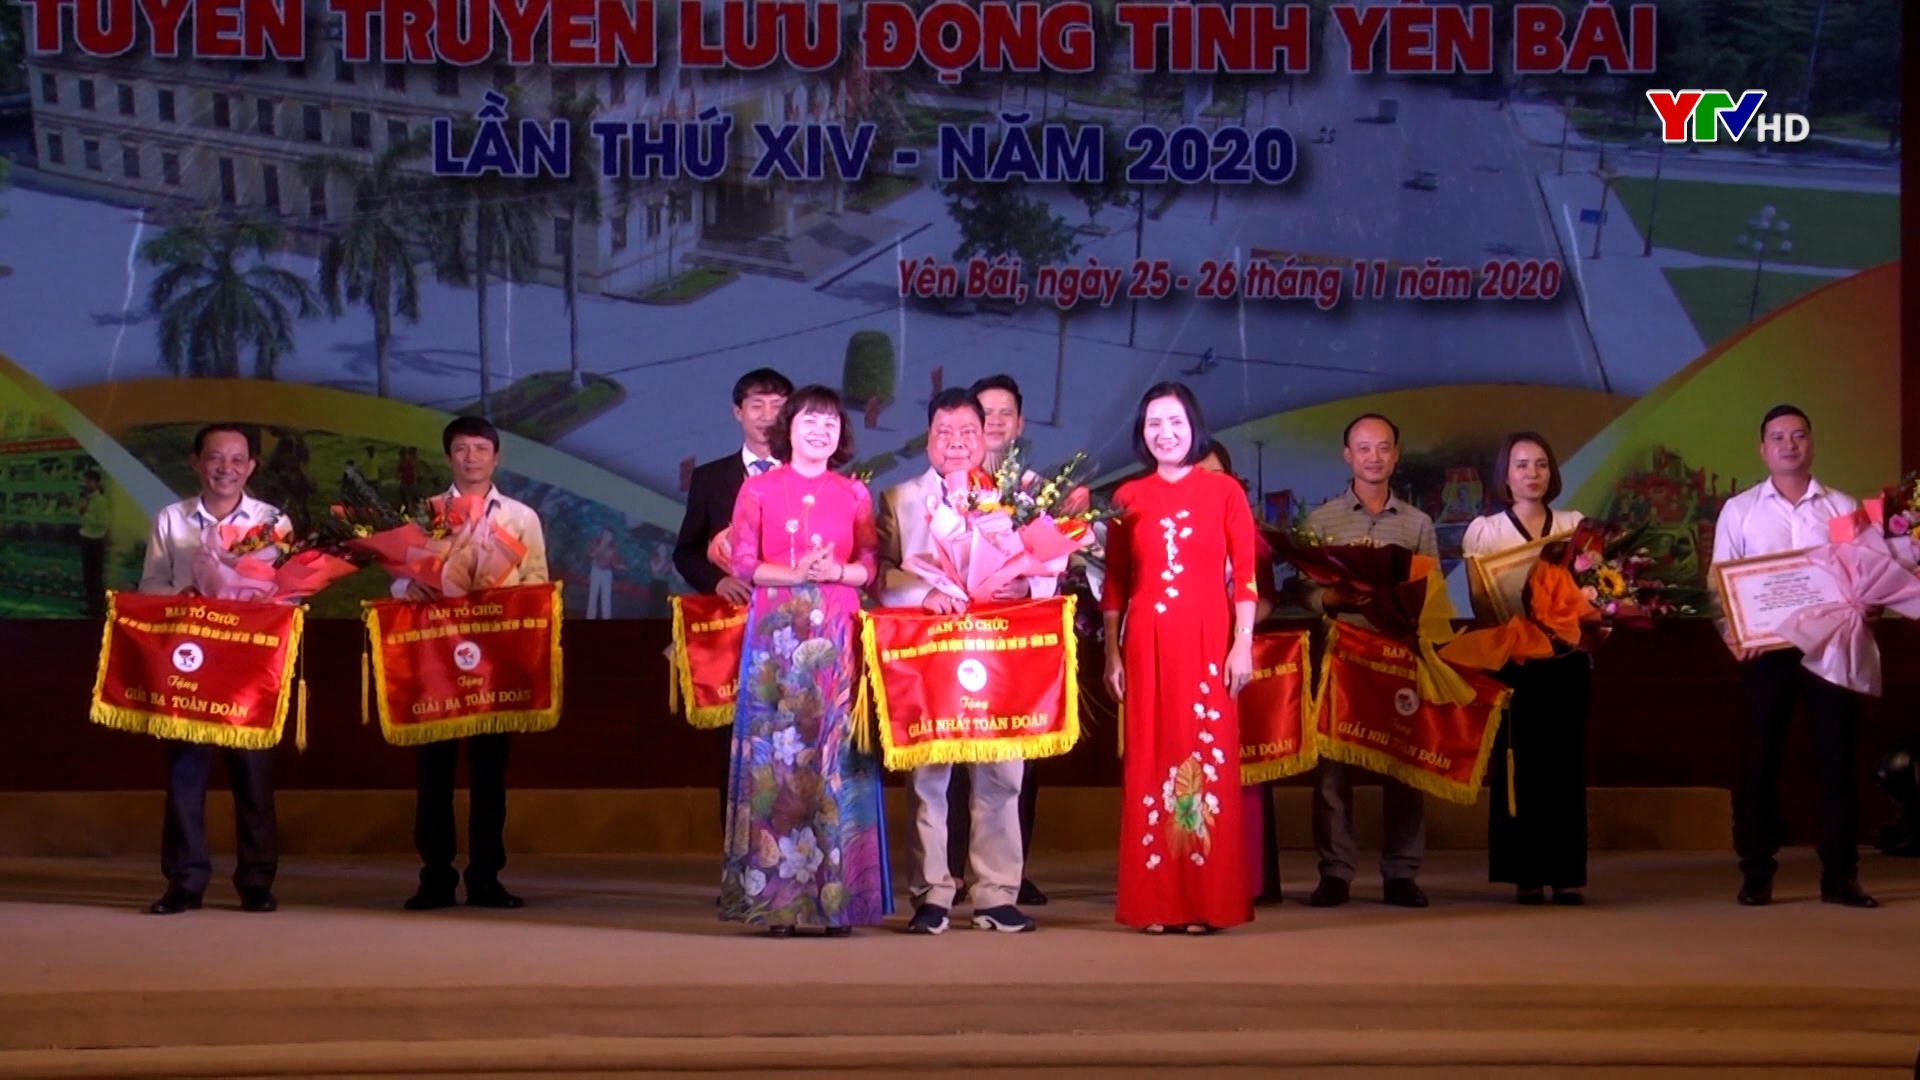 Trao giải Hội thi tuyên truyền lưu động tỉnh Yên Bái lần thứ 14 năm 2020.